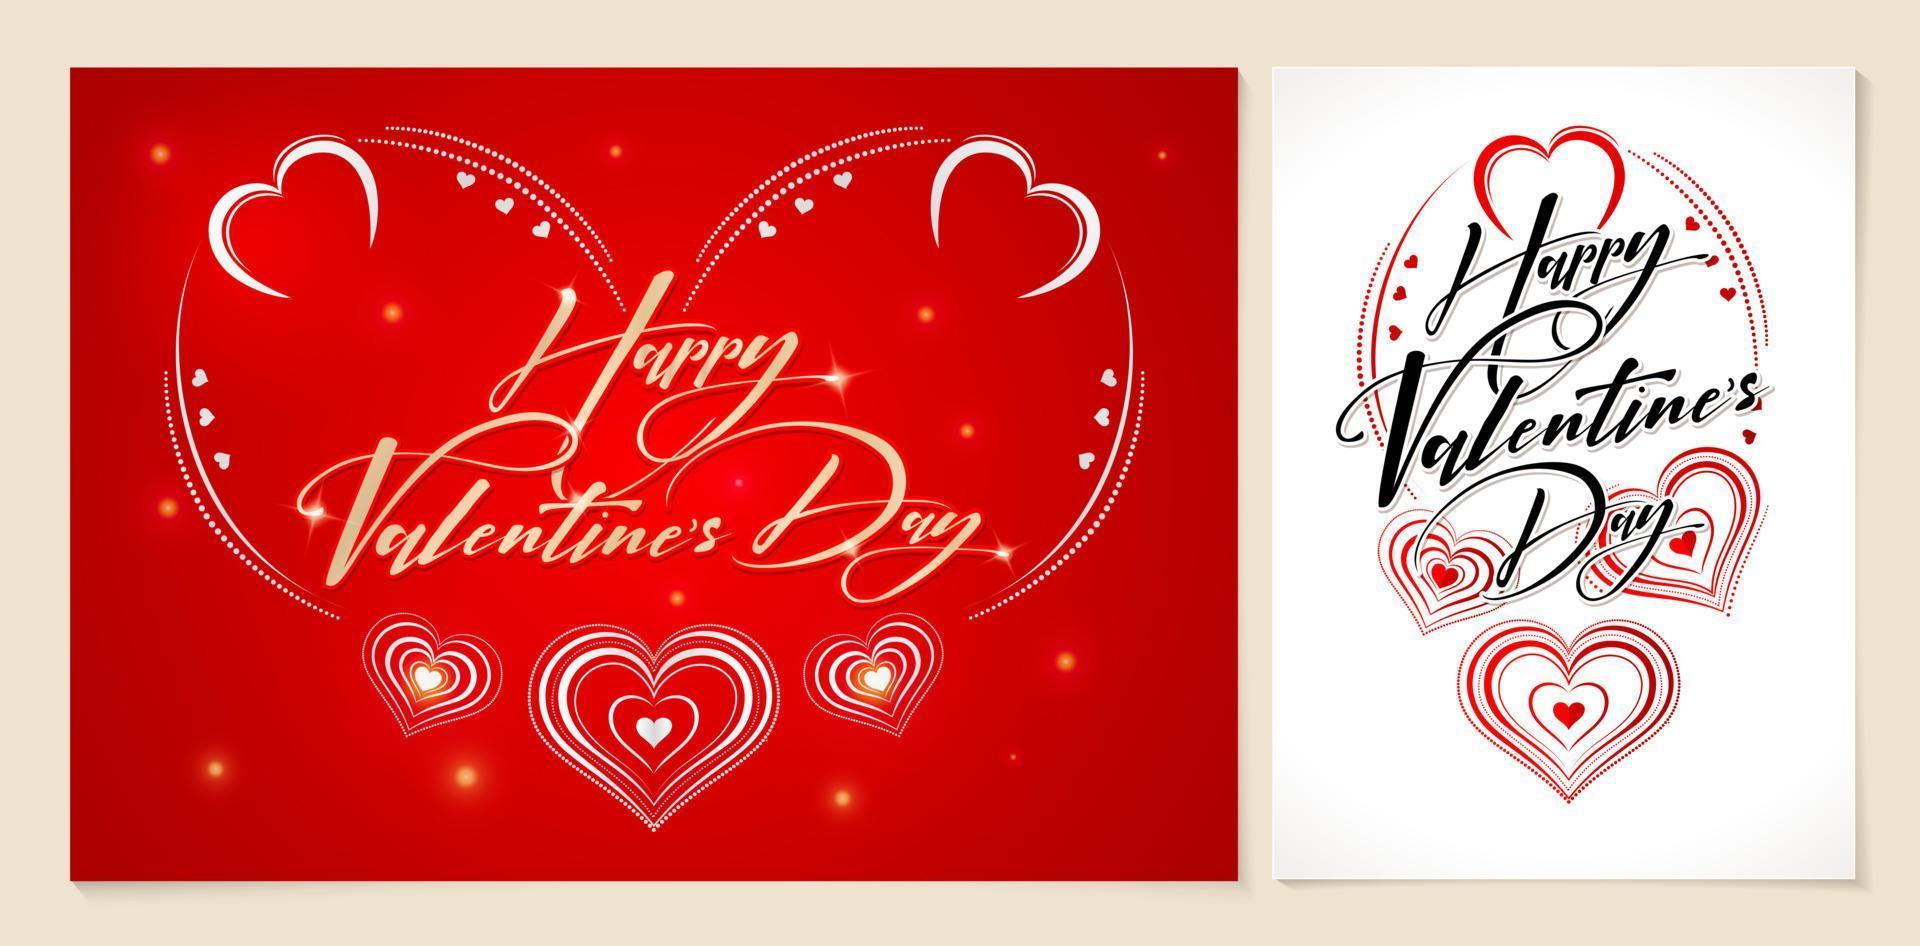 Lycklig valentines dag kort, illustration av en hjärta form eller symbol av kärlek, tillämplig för hälsning kort, inbjudan valentine firande, boktryck papper och utskrift, baner och affisch bakgrund vektor